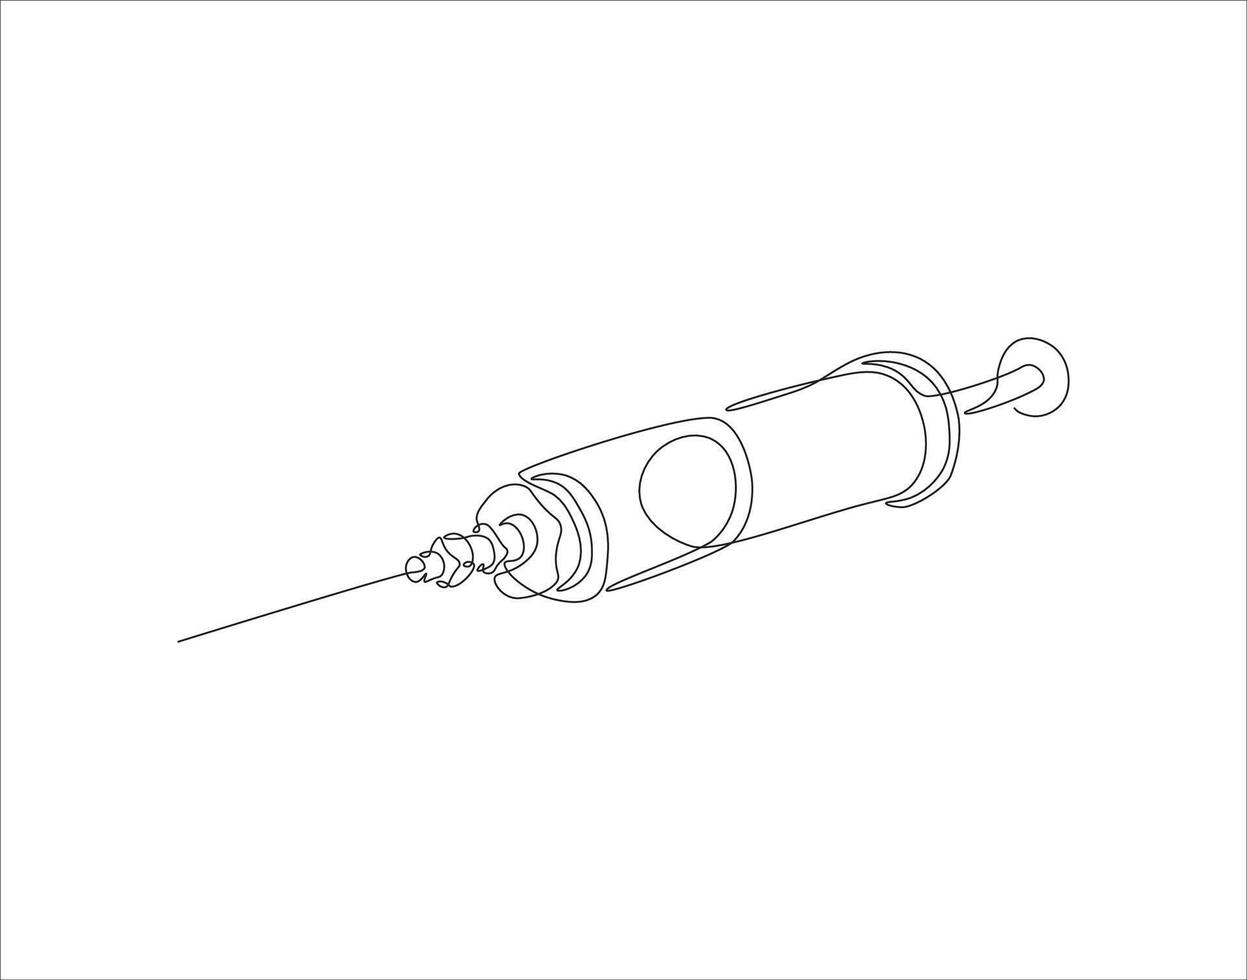 doorlopend lijn tekening van injectiespuit voor injecties. een lijn van spuit. injecteren doorlopend lijn kunst. bewerkbare schets. vector